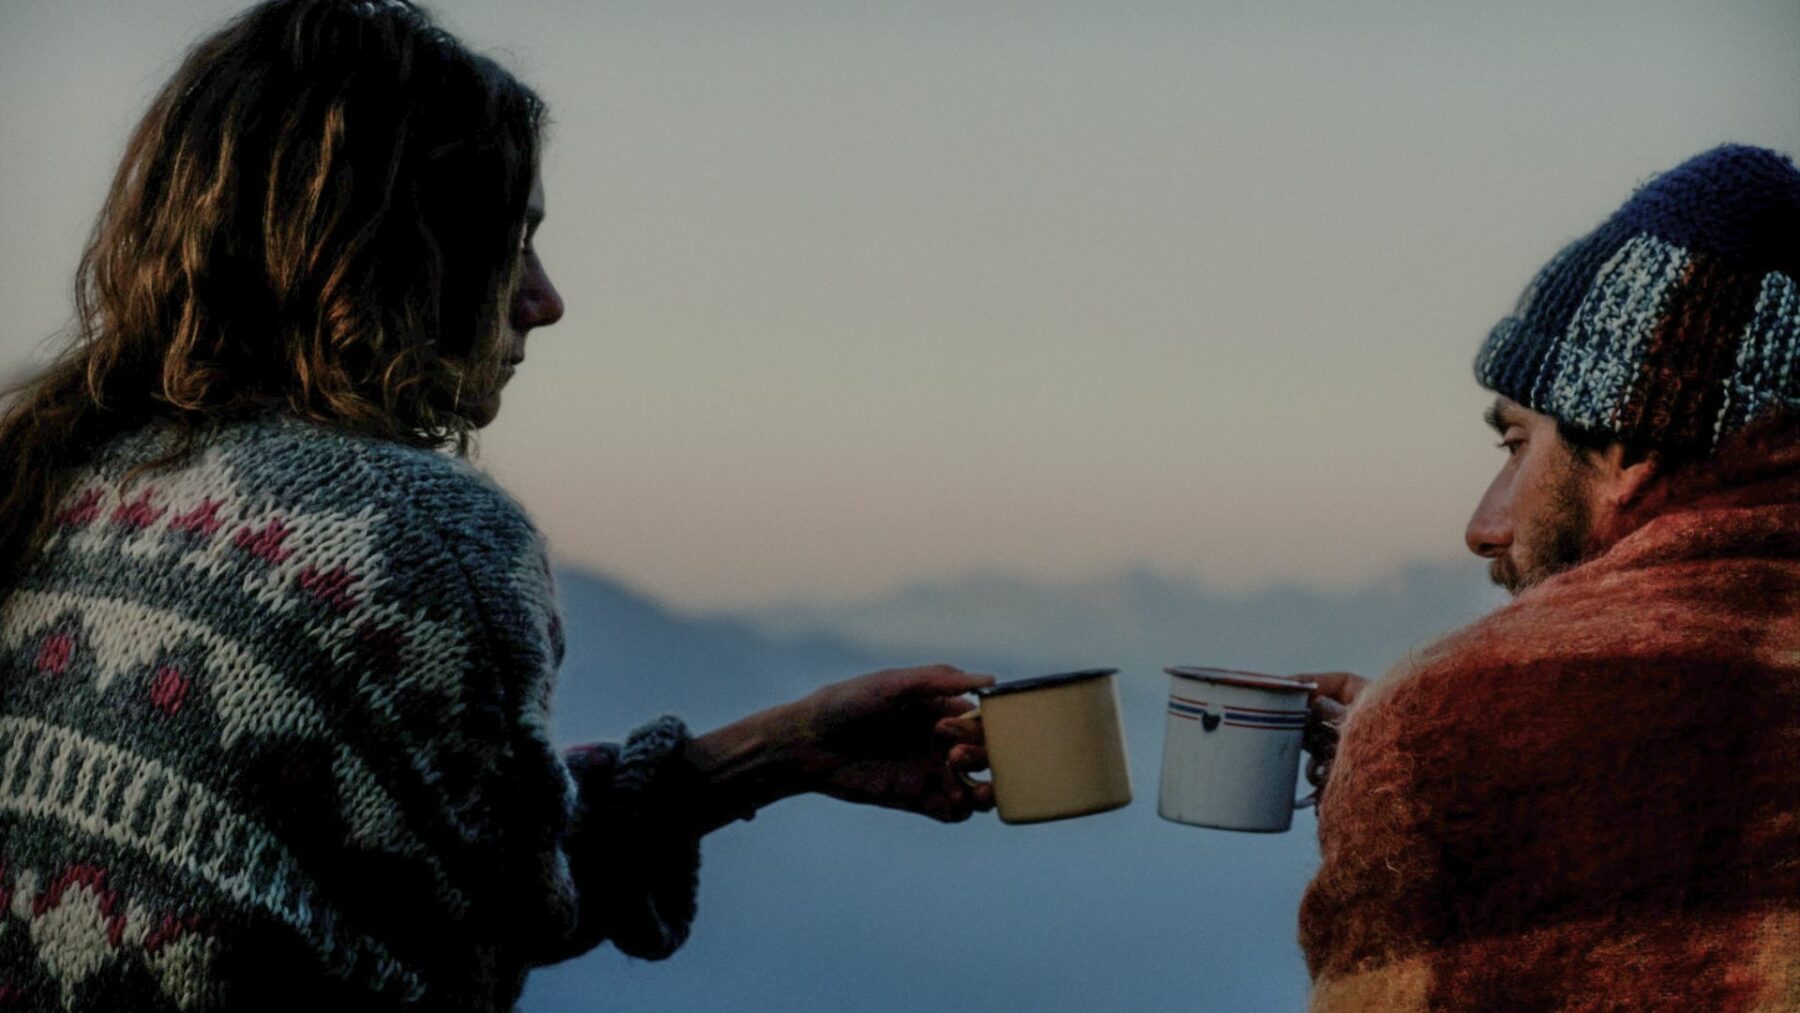 Kobieta i mężczyzna ciepło ubrani, z kocami podczas górskiego poranka, w dłoniach mają kubki z gorącym napojem.